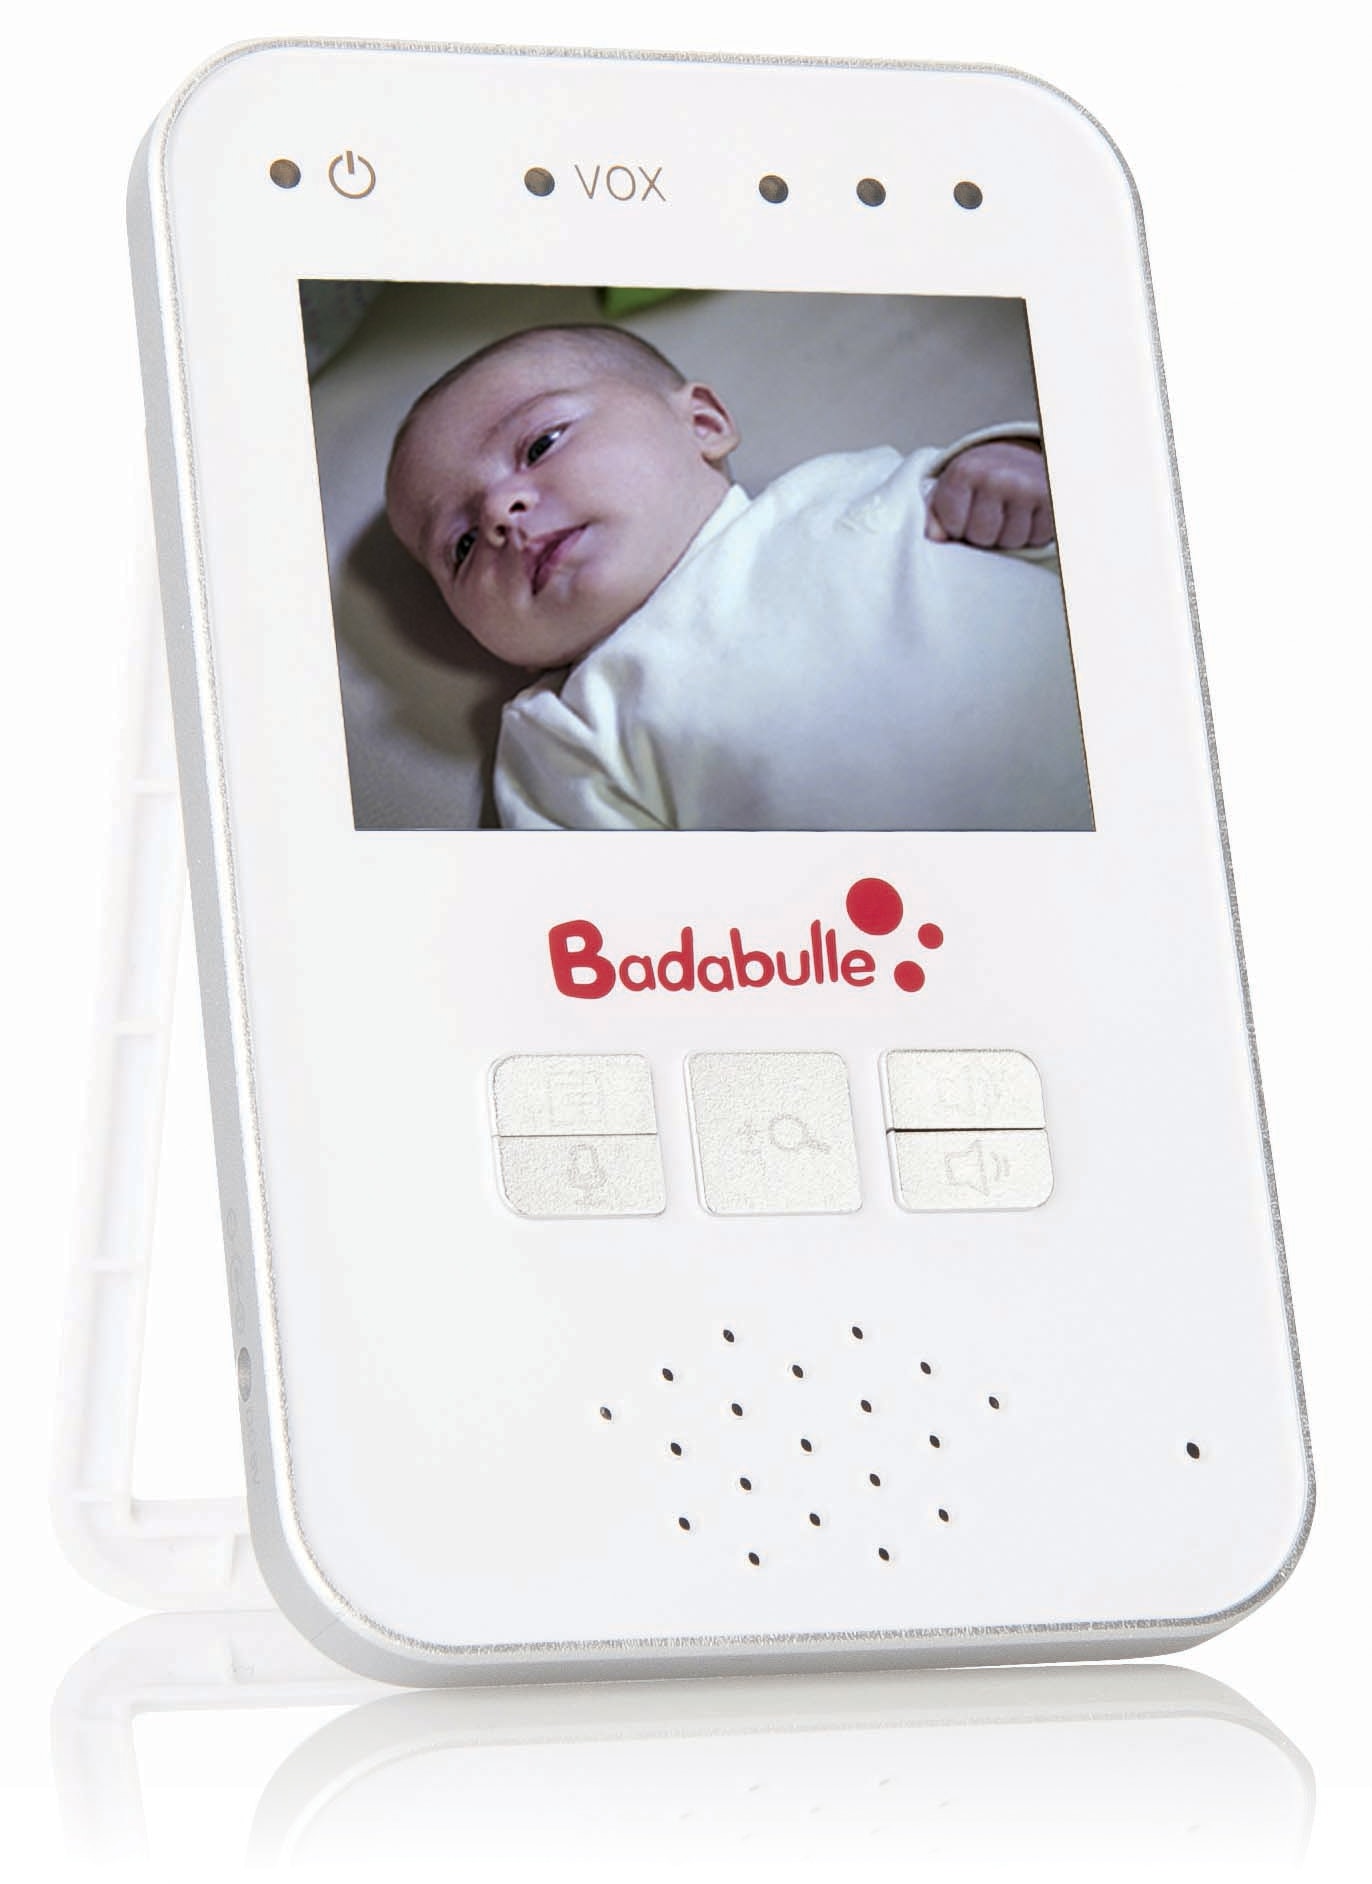 Babyphone Badabulle : Avis sur cette marque d'écoute bébé